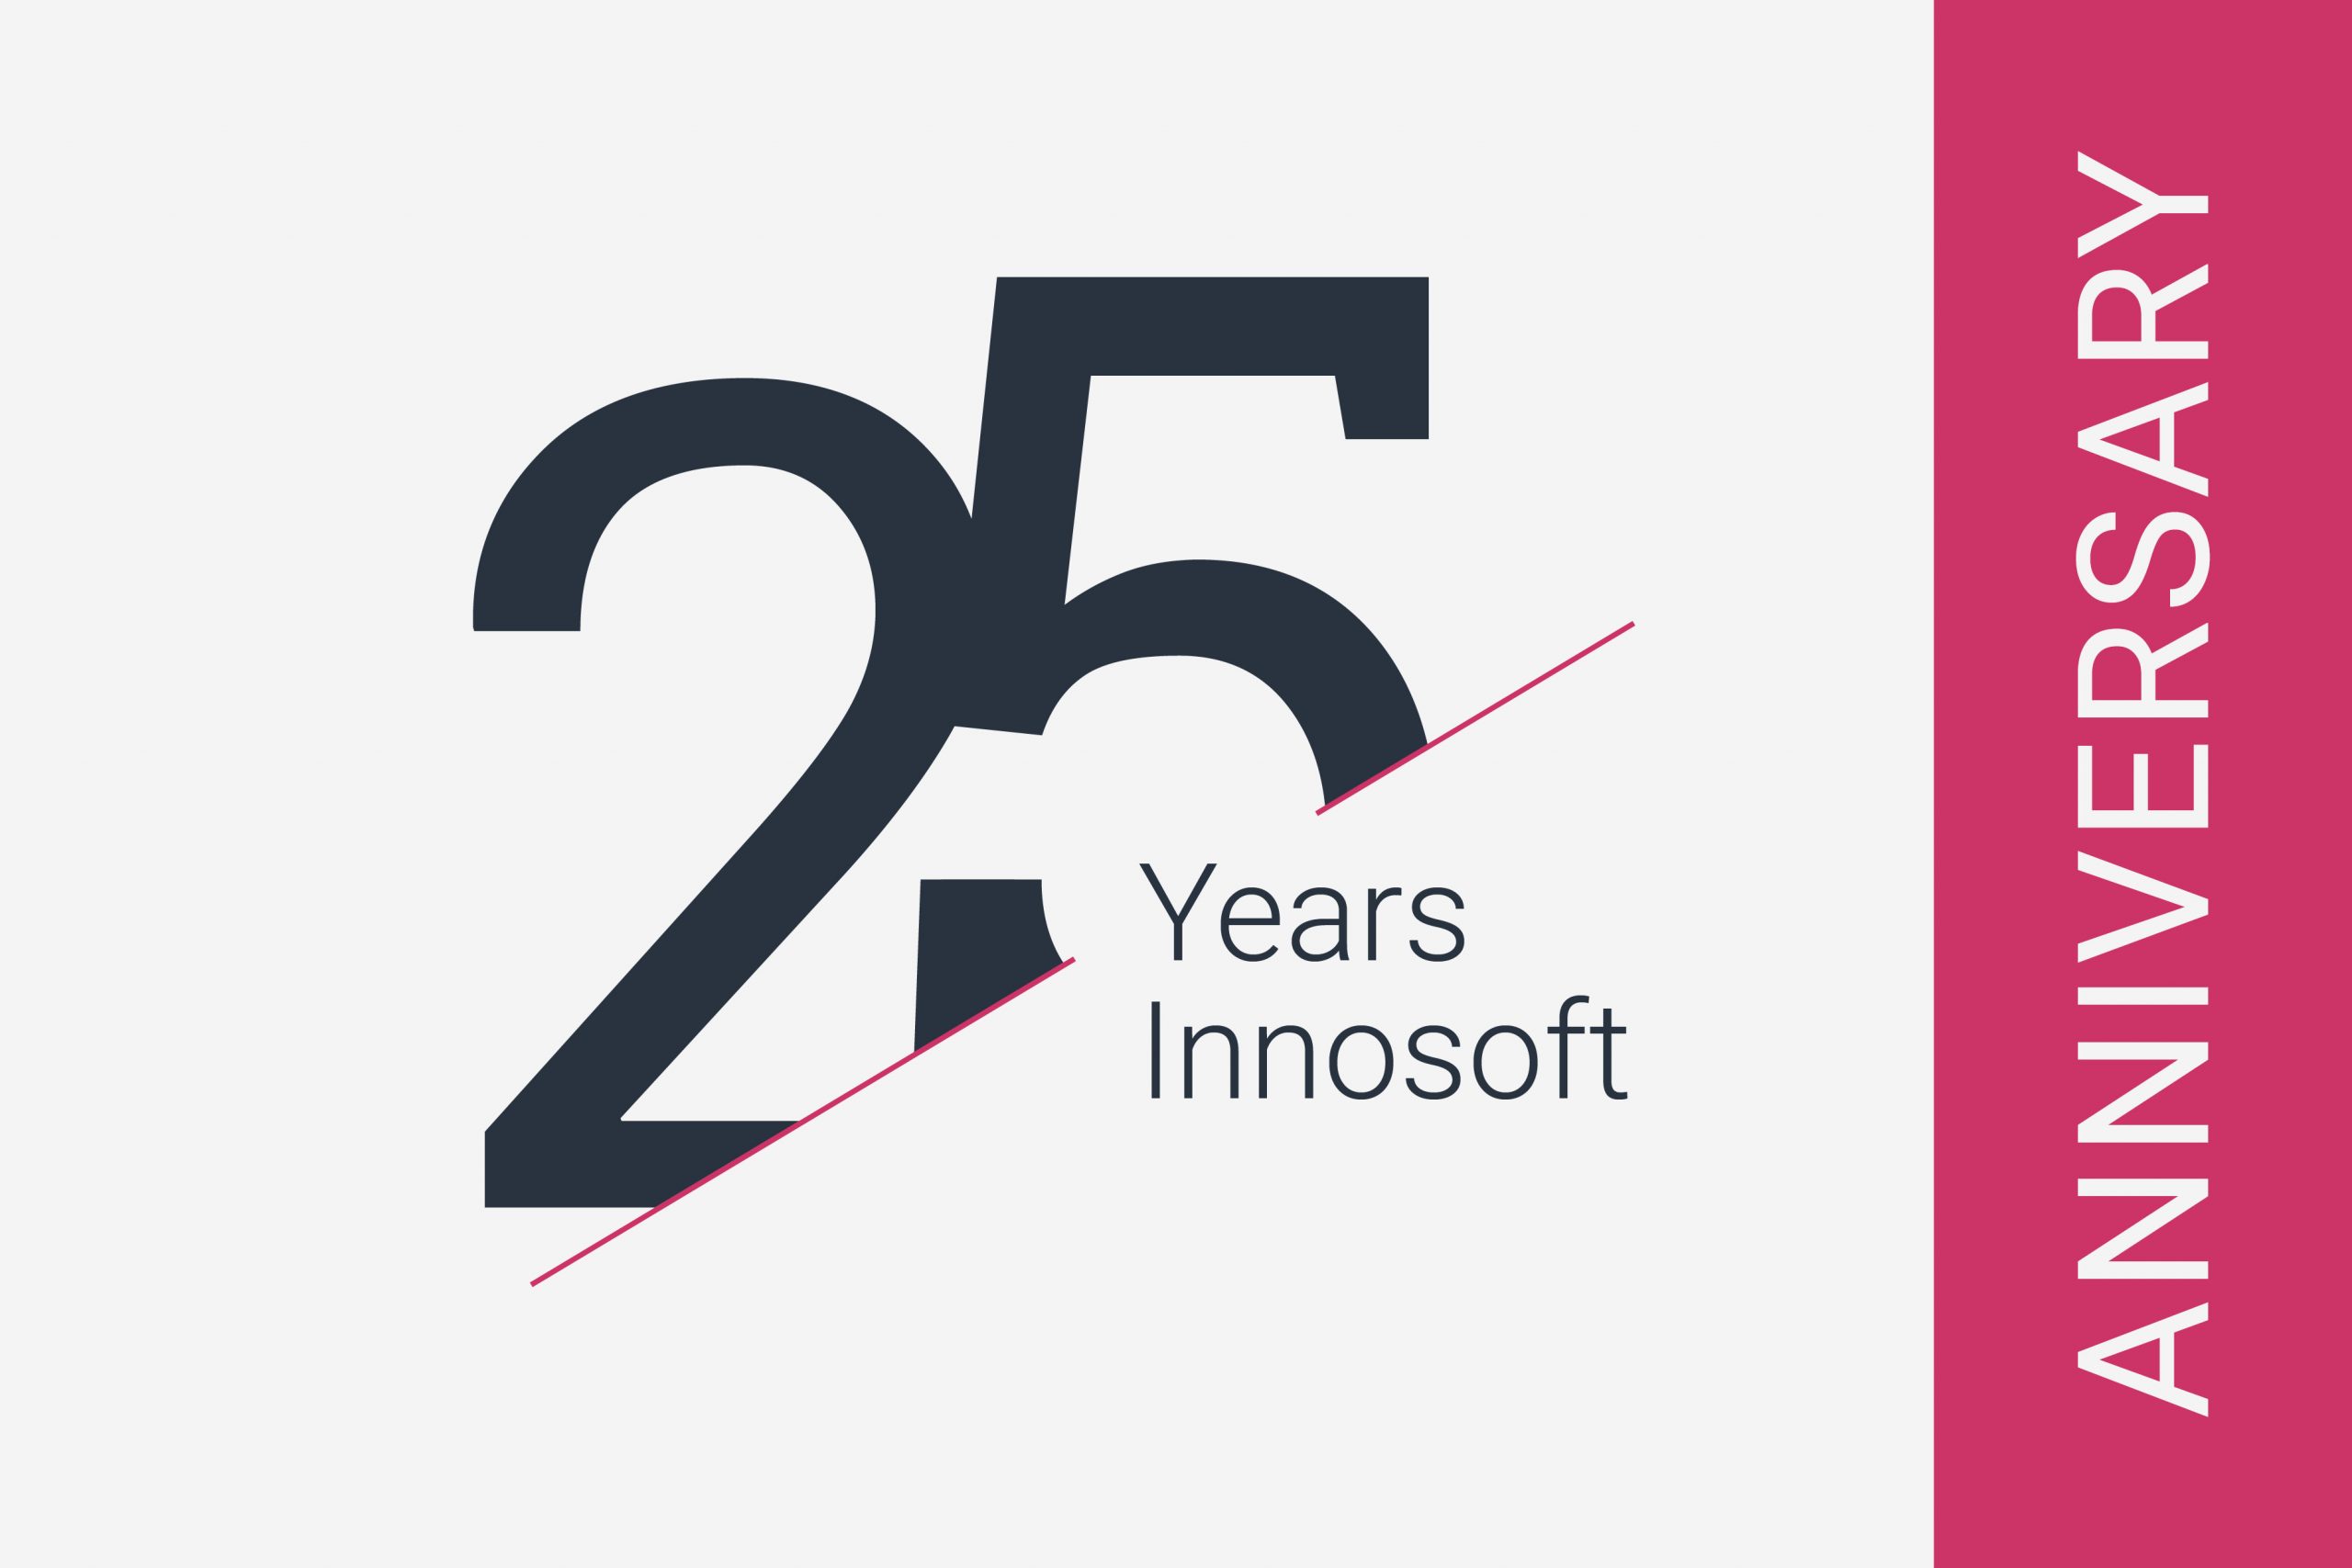 25 Years Innosoft